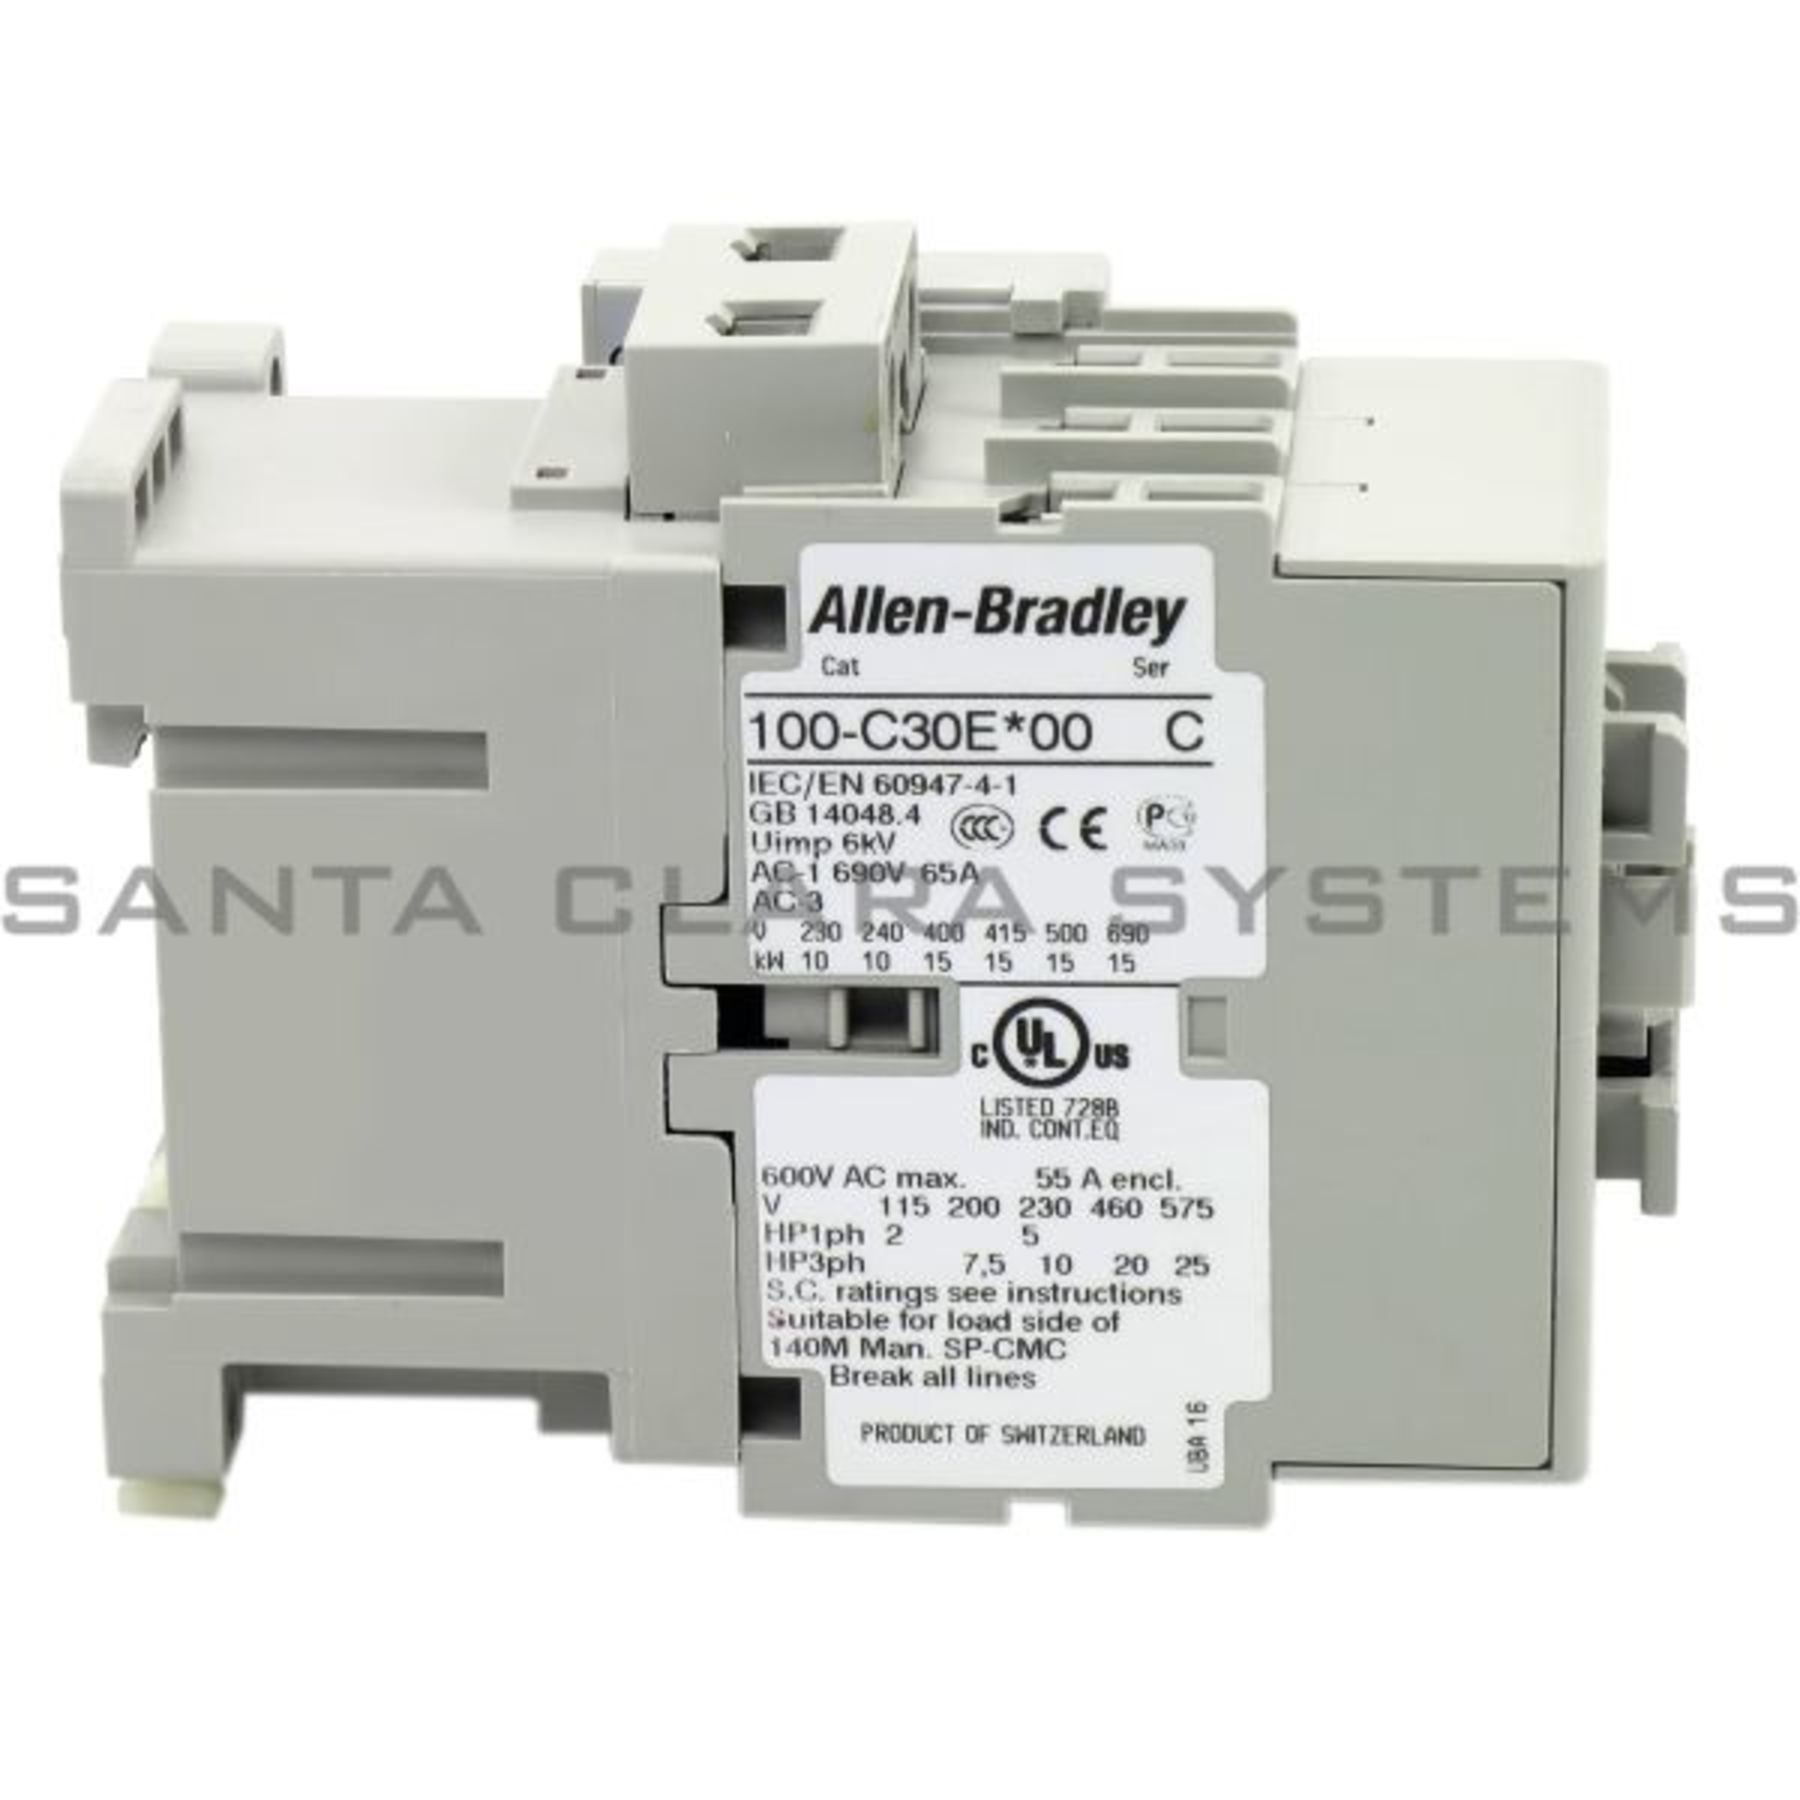 Allen Bradley 100-C30*00 Ser C 600VAC Contactor W/193-EECB 1.0-5.0